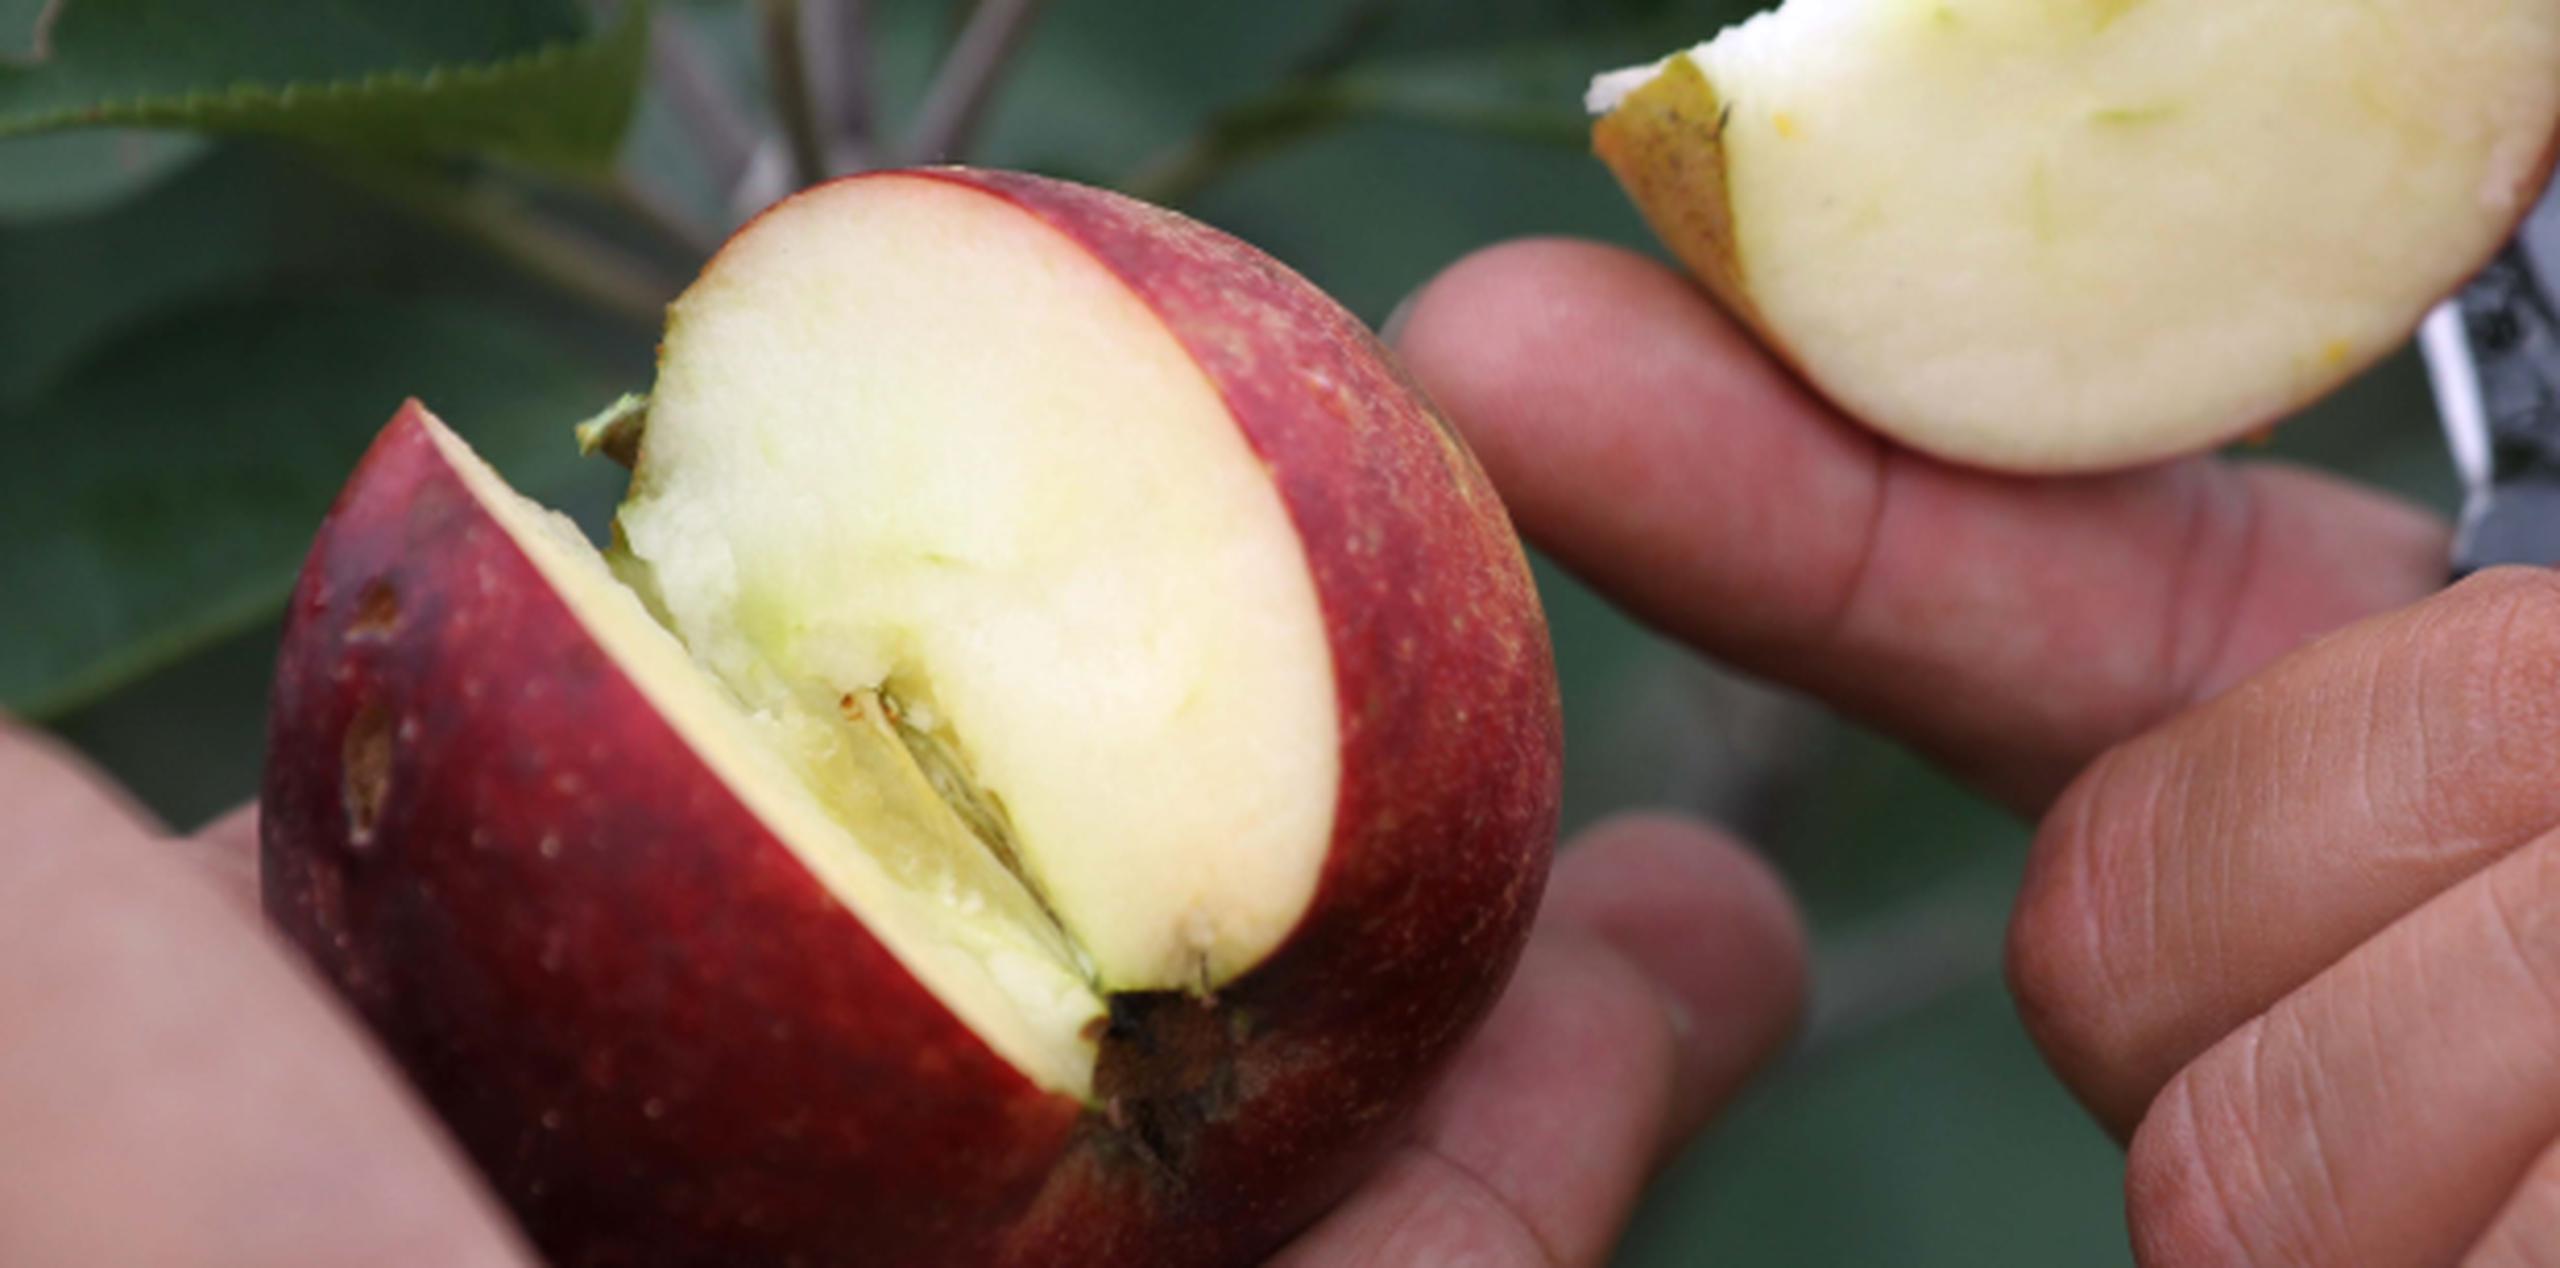 Las manzanas son una buena alternativa para merendar de forma saludable. (Archivo)